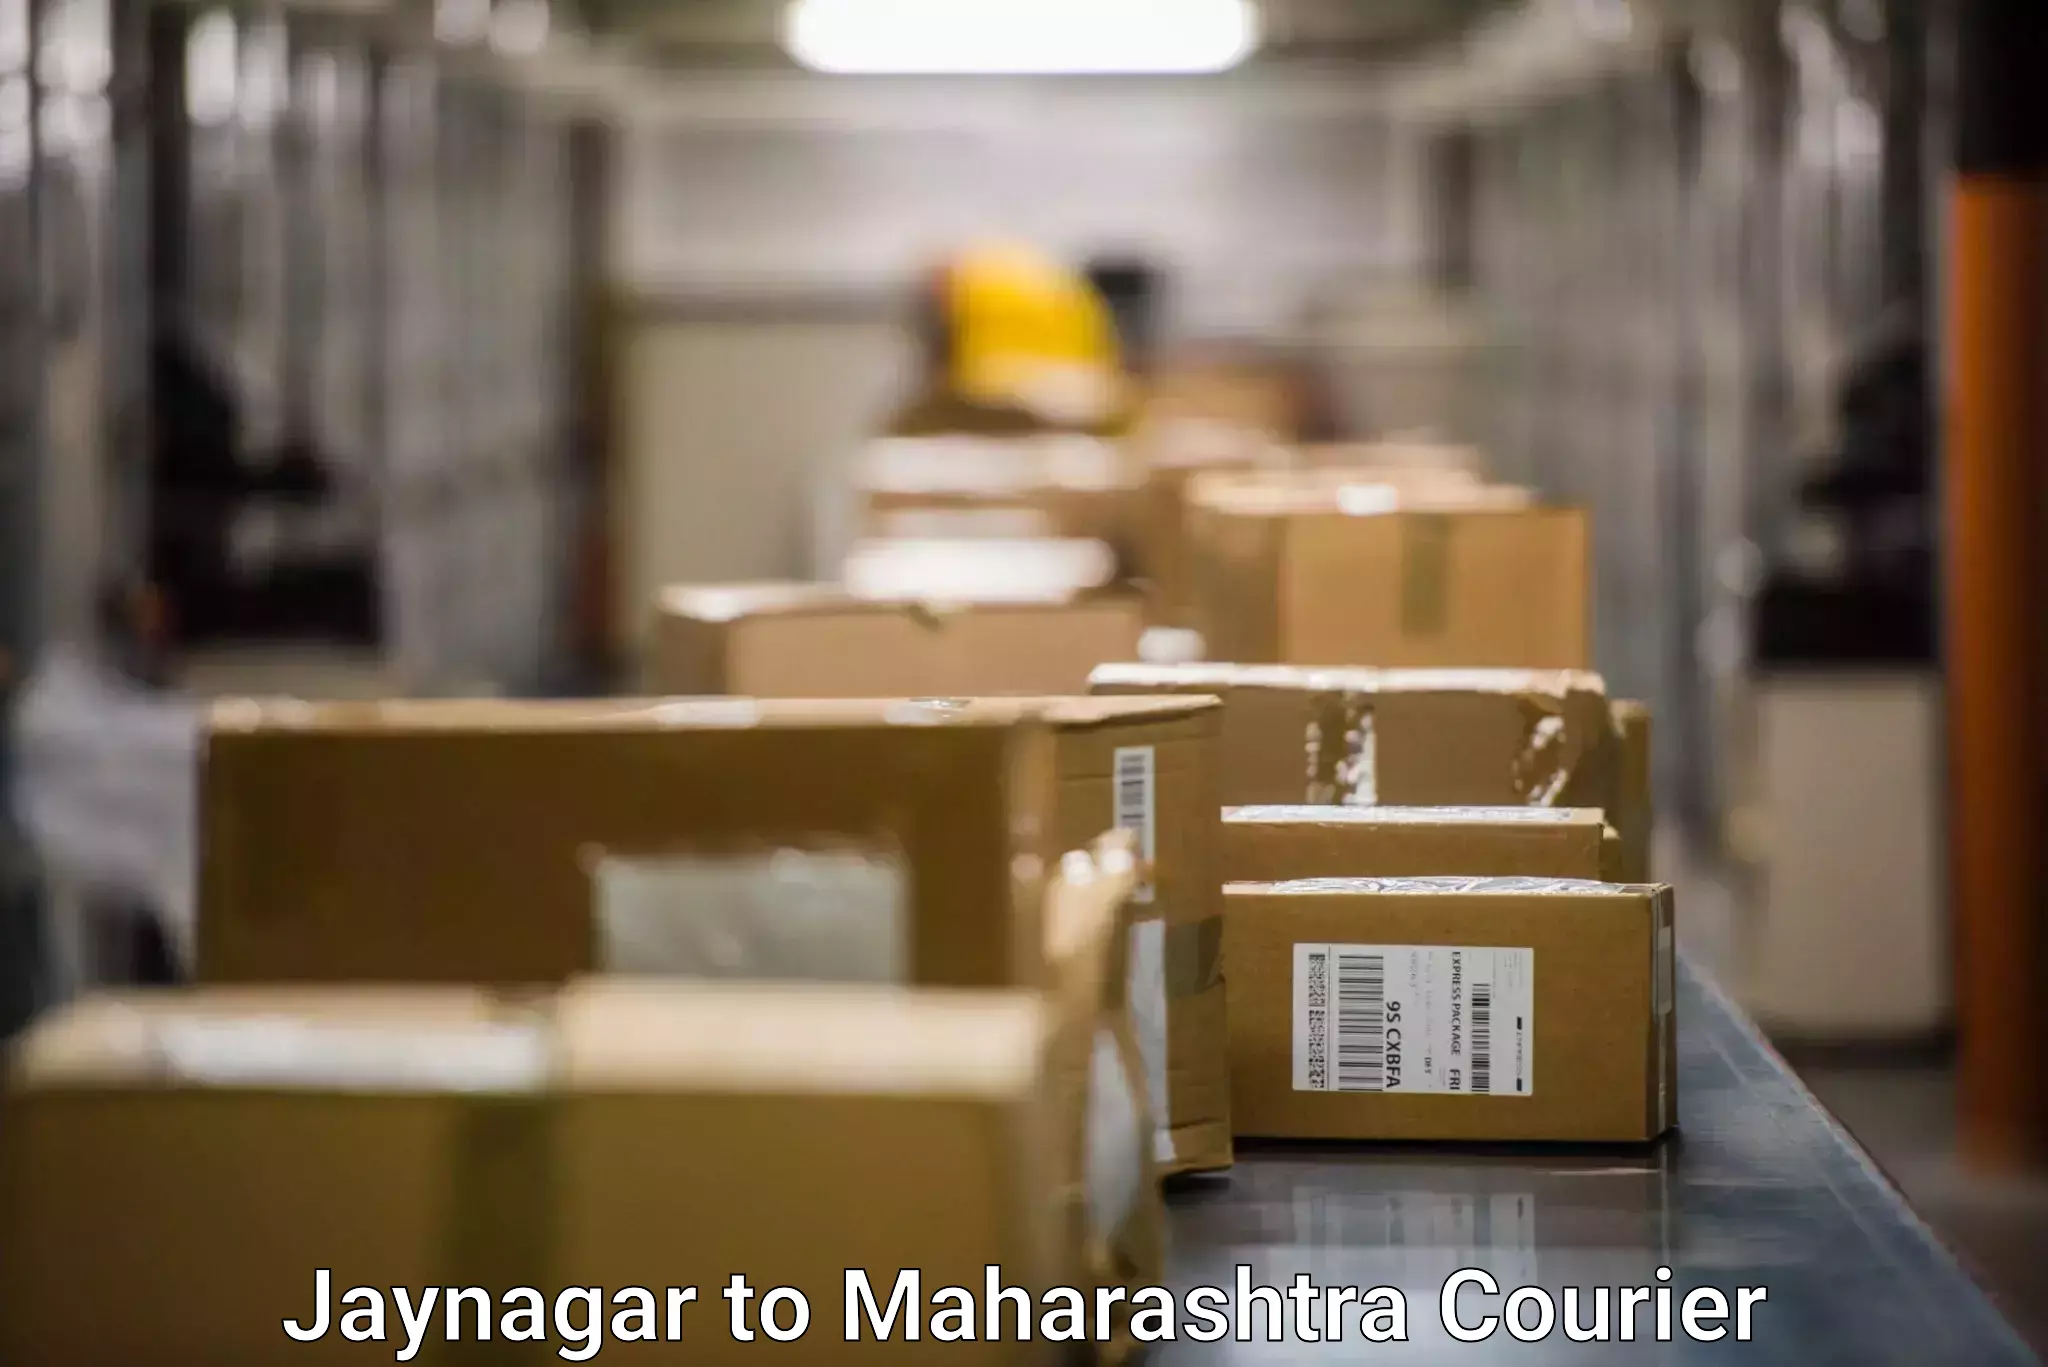 Lightweight parcel options Jaynagar to Maharashtra